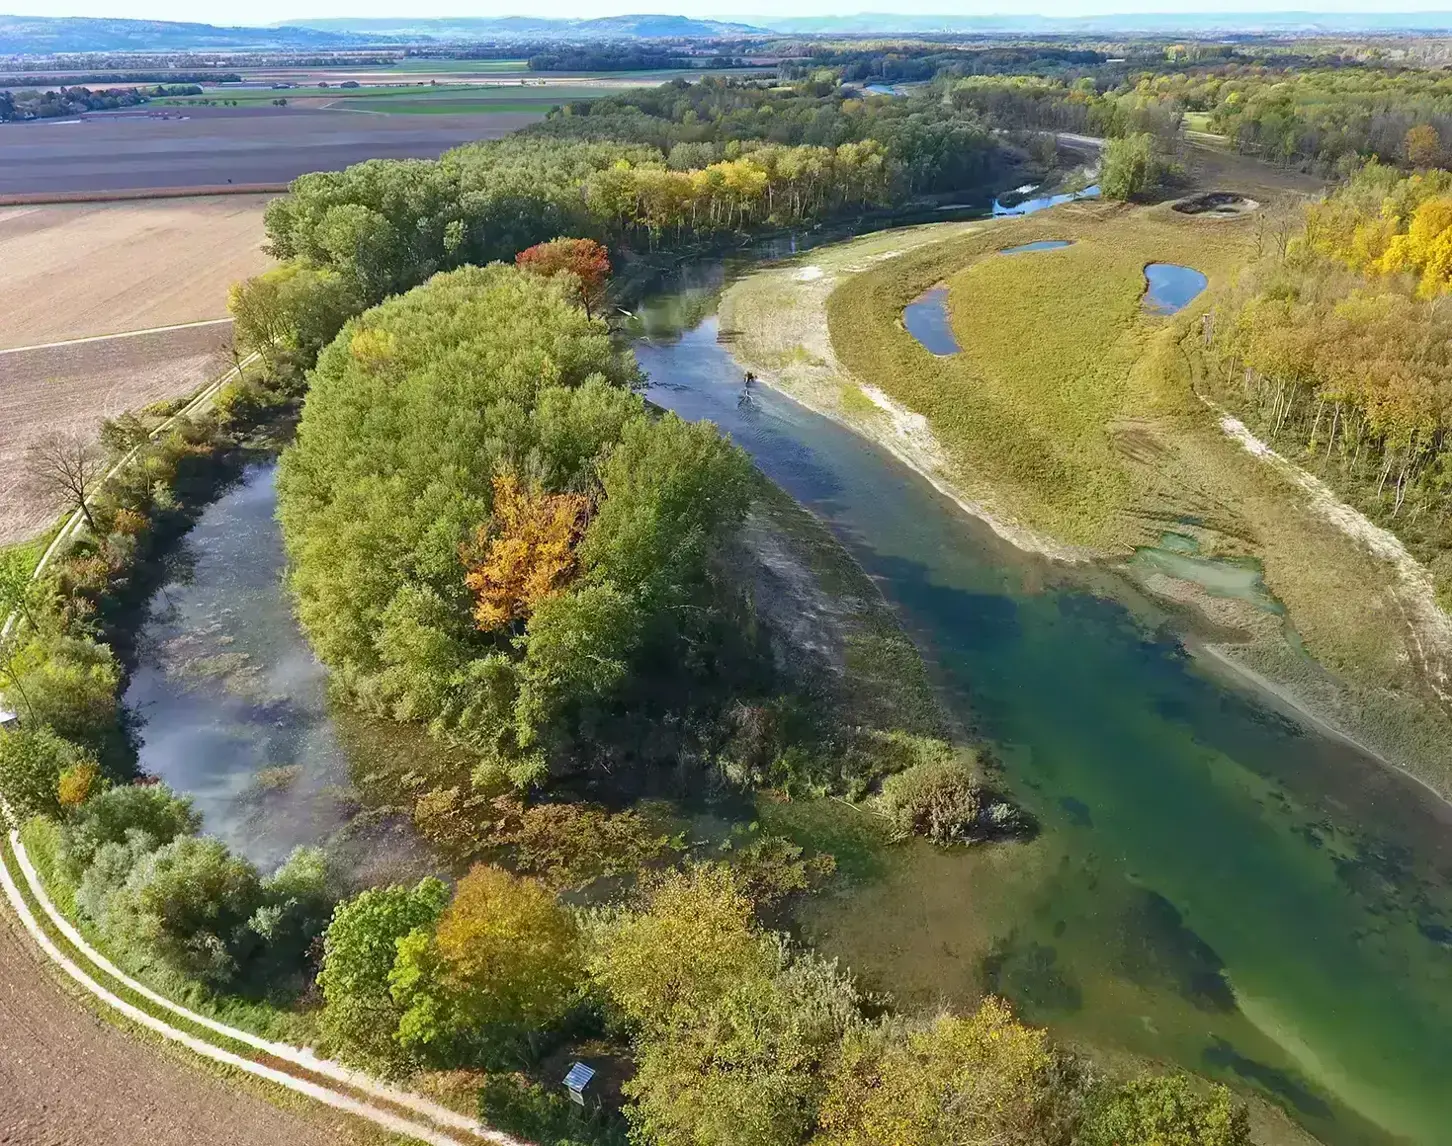 Ein Blick auf das abgeschlossene Life-Traisen-Projekt: Der renaturierte Fluss mäandert durch die grüne Natur.